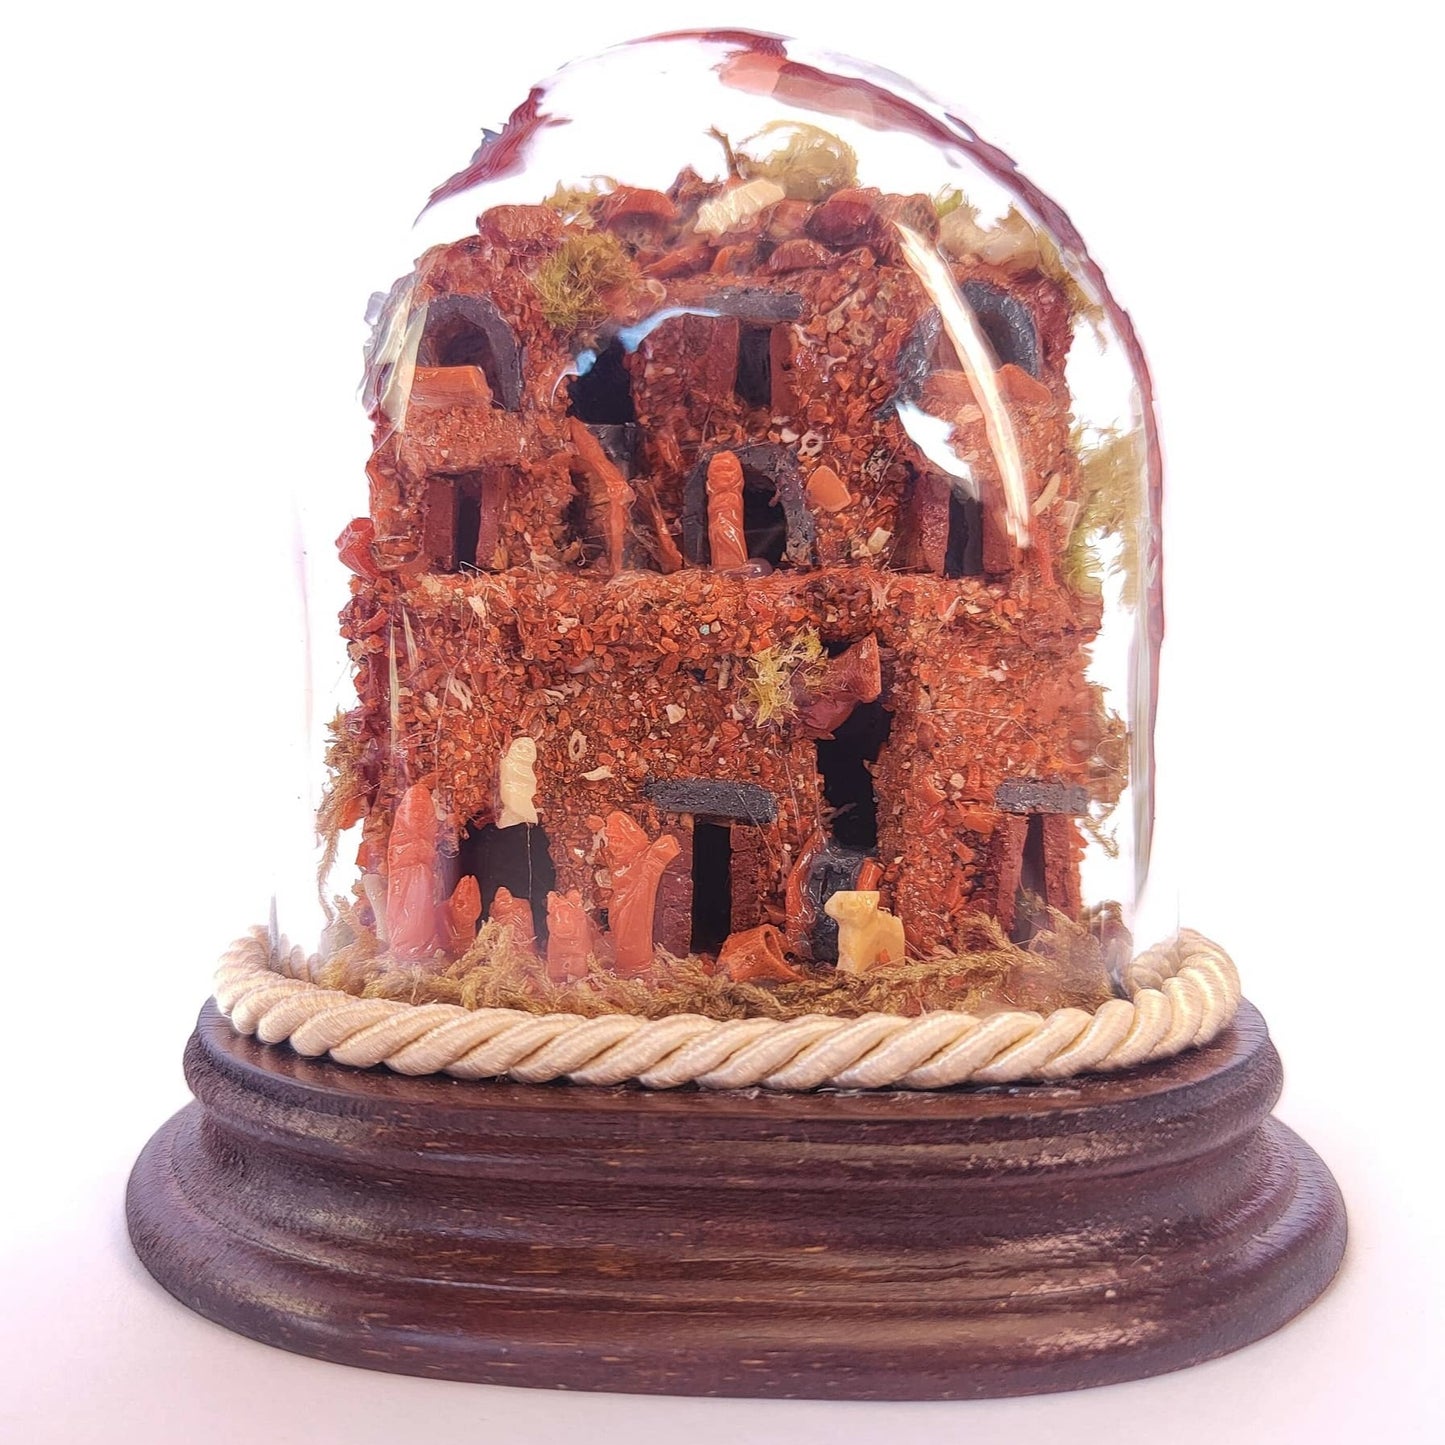 presepe artigianale in stile antico di corallo rosso autentico in campana di vetro ovale